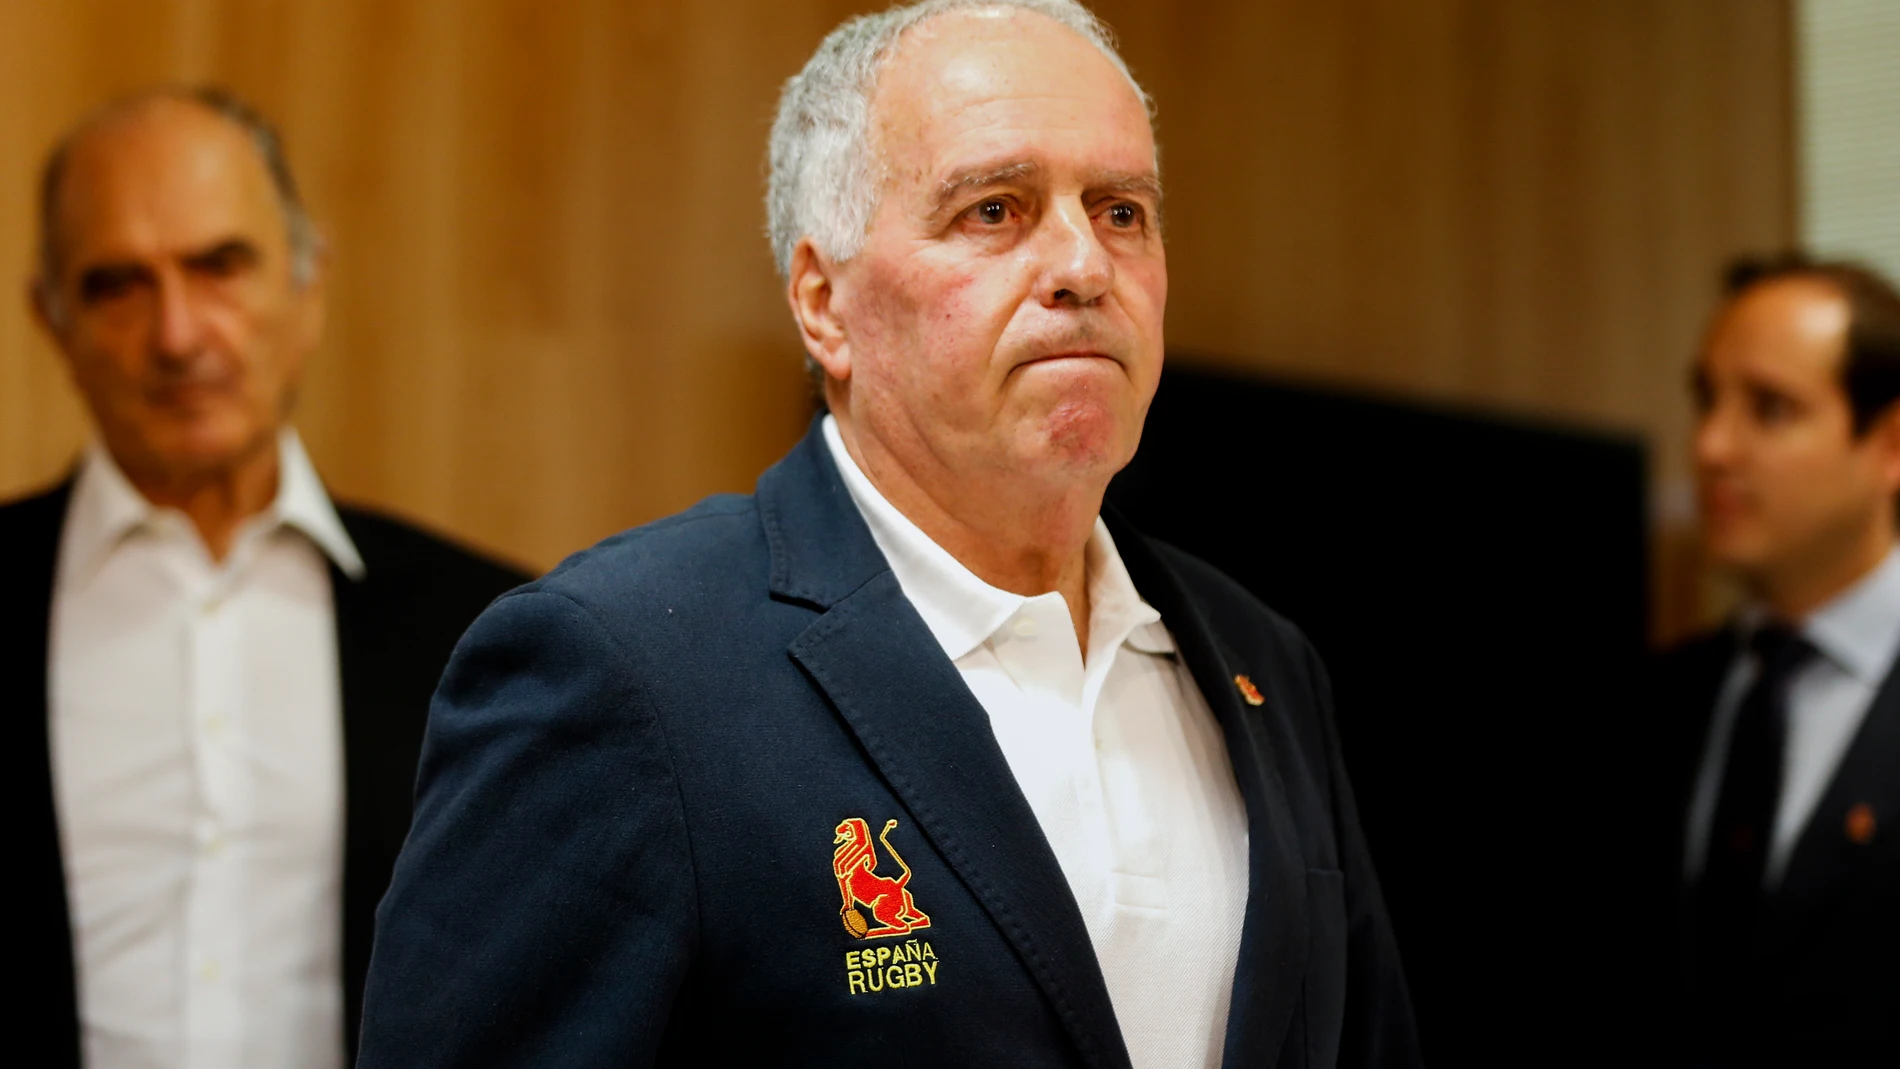 Alfonso Feijoo, ex presidente de la Federación española de rugby